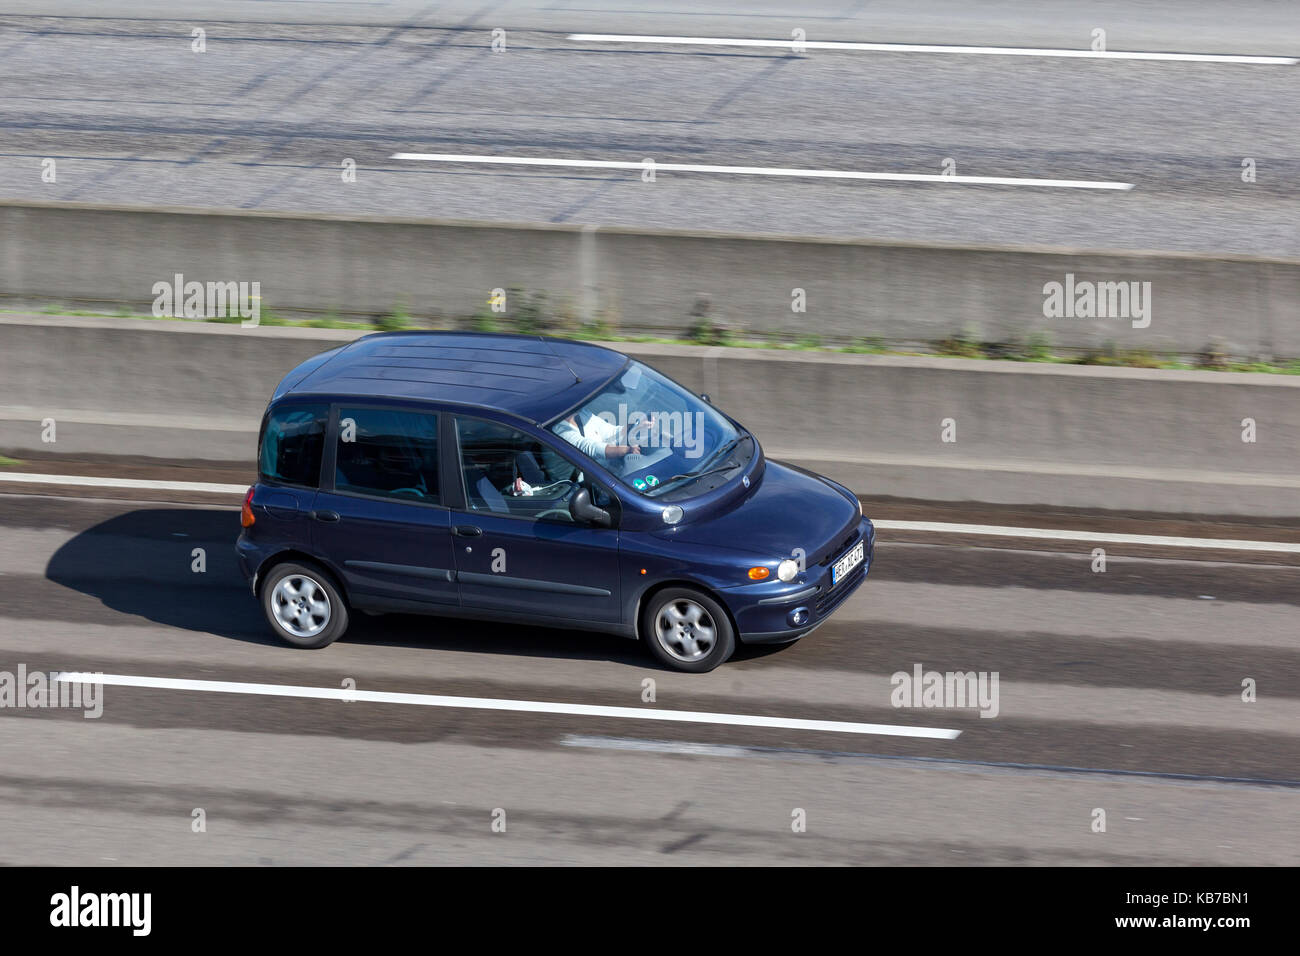 Francfort, Allemagne - Sep 19, 2017 : l'italien Fiat Multipla monospace compact de la conduite sur l'autoroute en Allemagne Banque D'Images